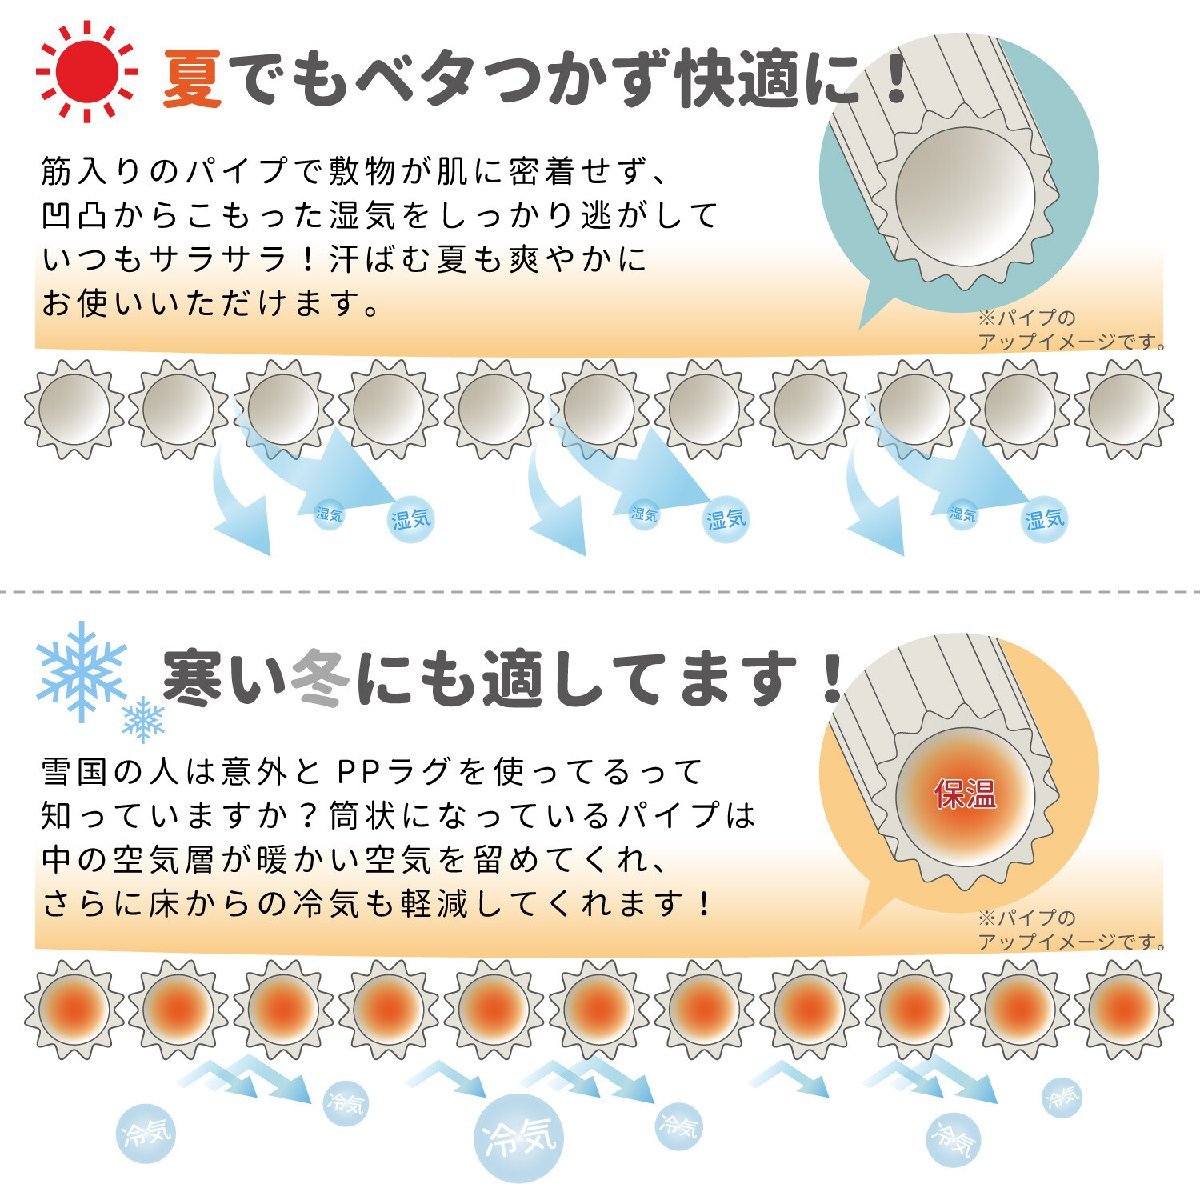 [ Япония атопия ассоциация рекомендация товар ]PP рисунок сверху кровать промывание в воде OK сделано в Японии [#110msbi] цветочный принт мир вкус Honma 6.( примерно 286×382cm)(.. способ цветок ..)